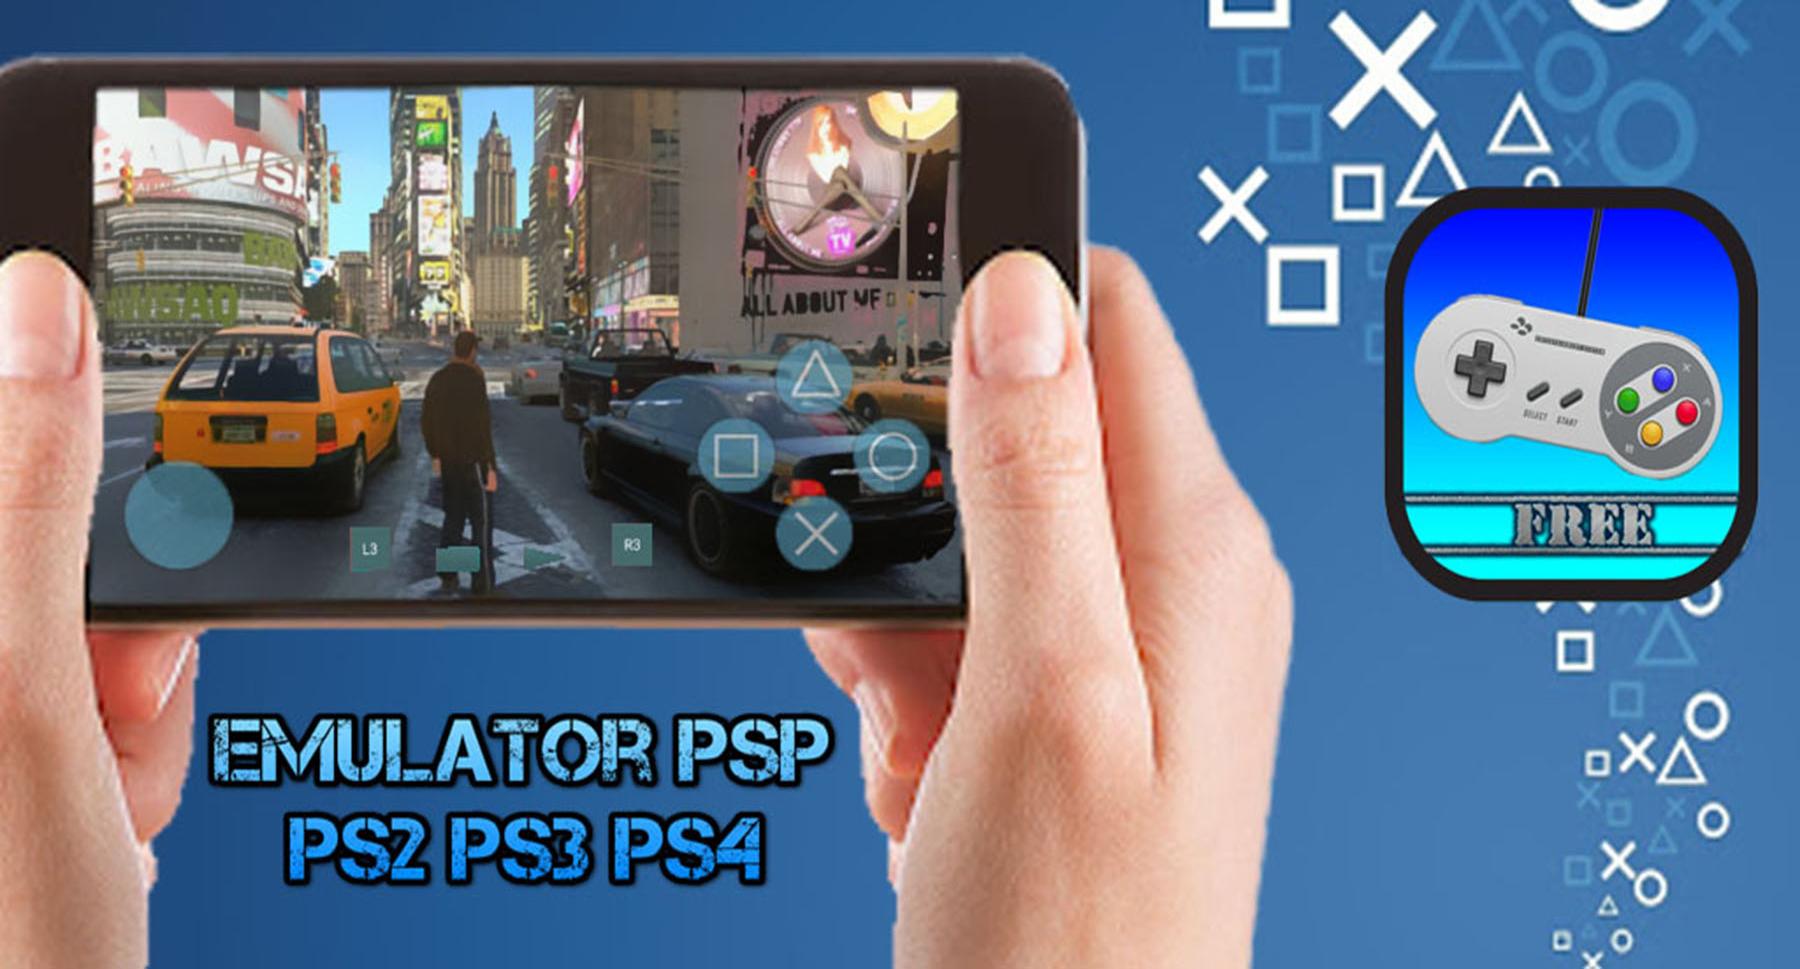 TÉLÉCHARGER ET JOUER: Emulateur PSP PS2 PS3 PS4 APK pour Android Télécharger